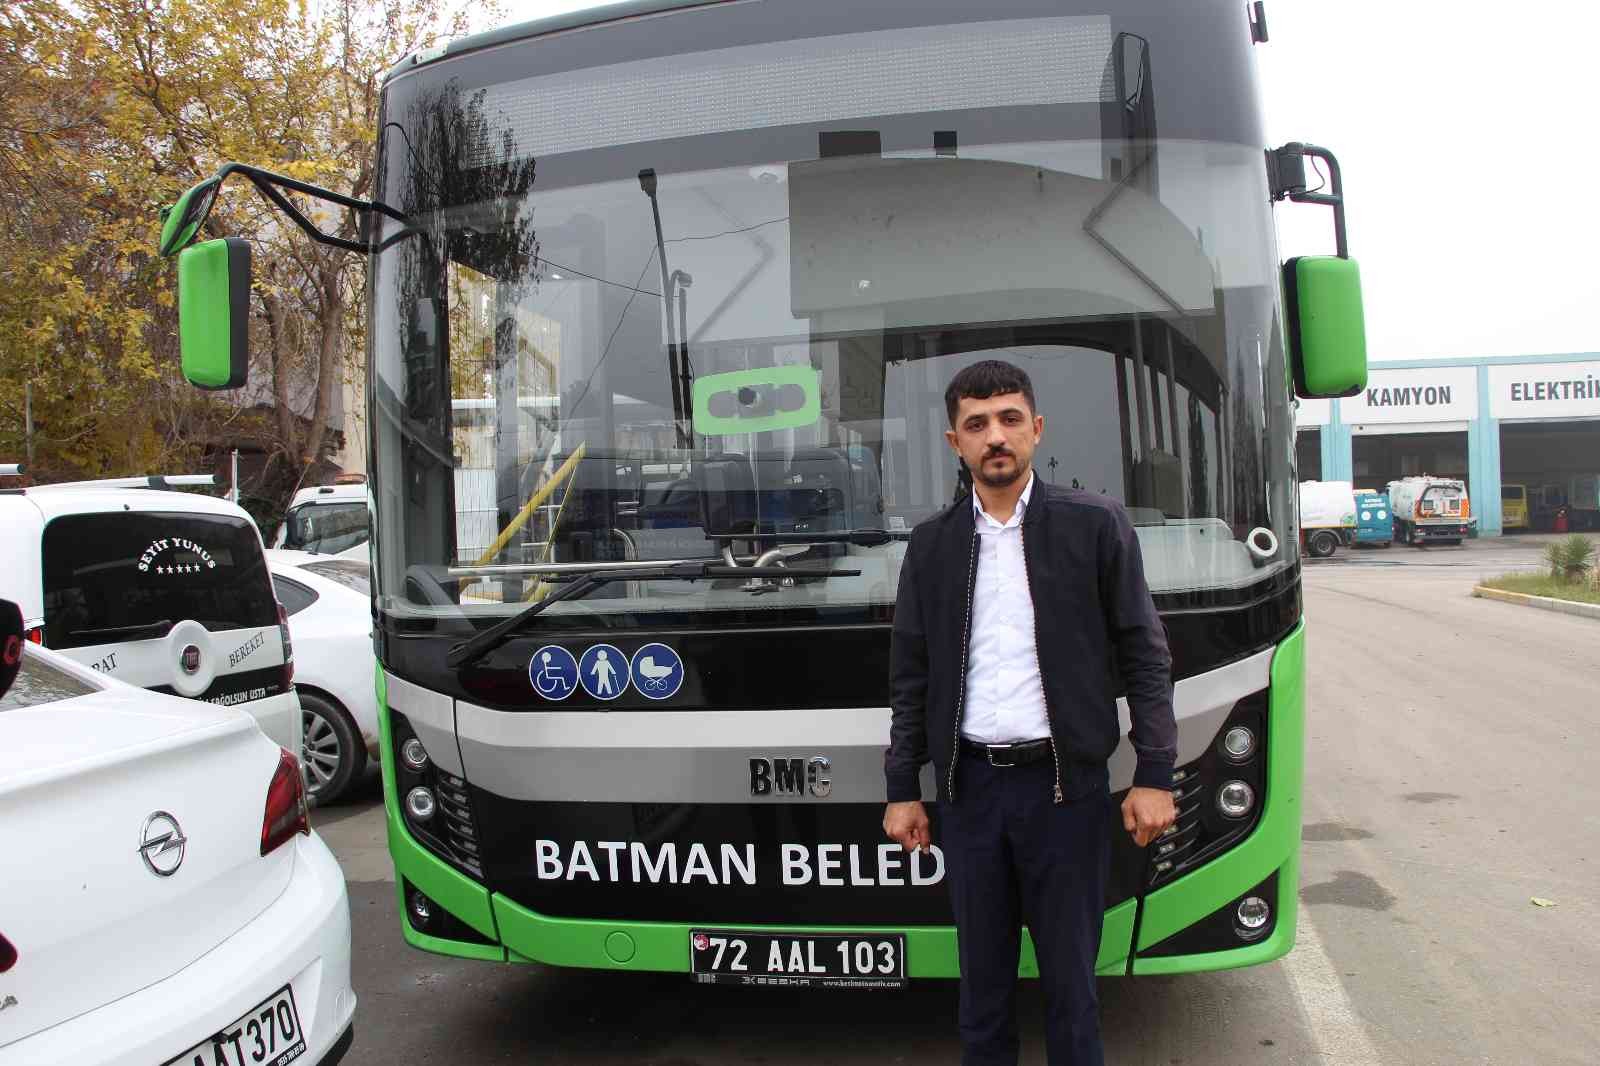 Batmanlı şoför otobüste unutulan yaklaşık 200 bin lira değerindeki altını polise teslim etti #batman